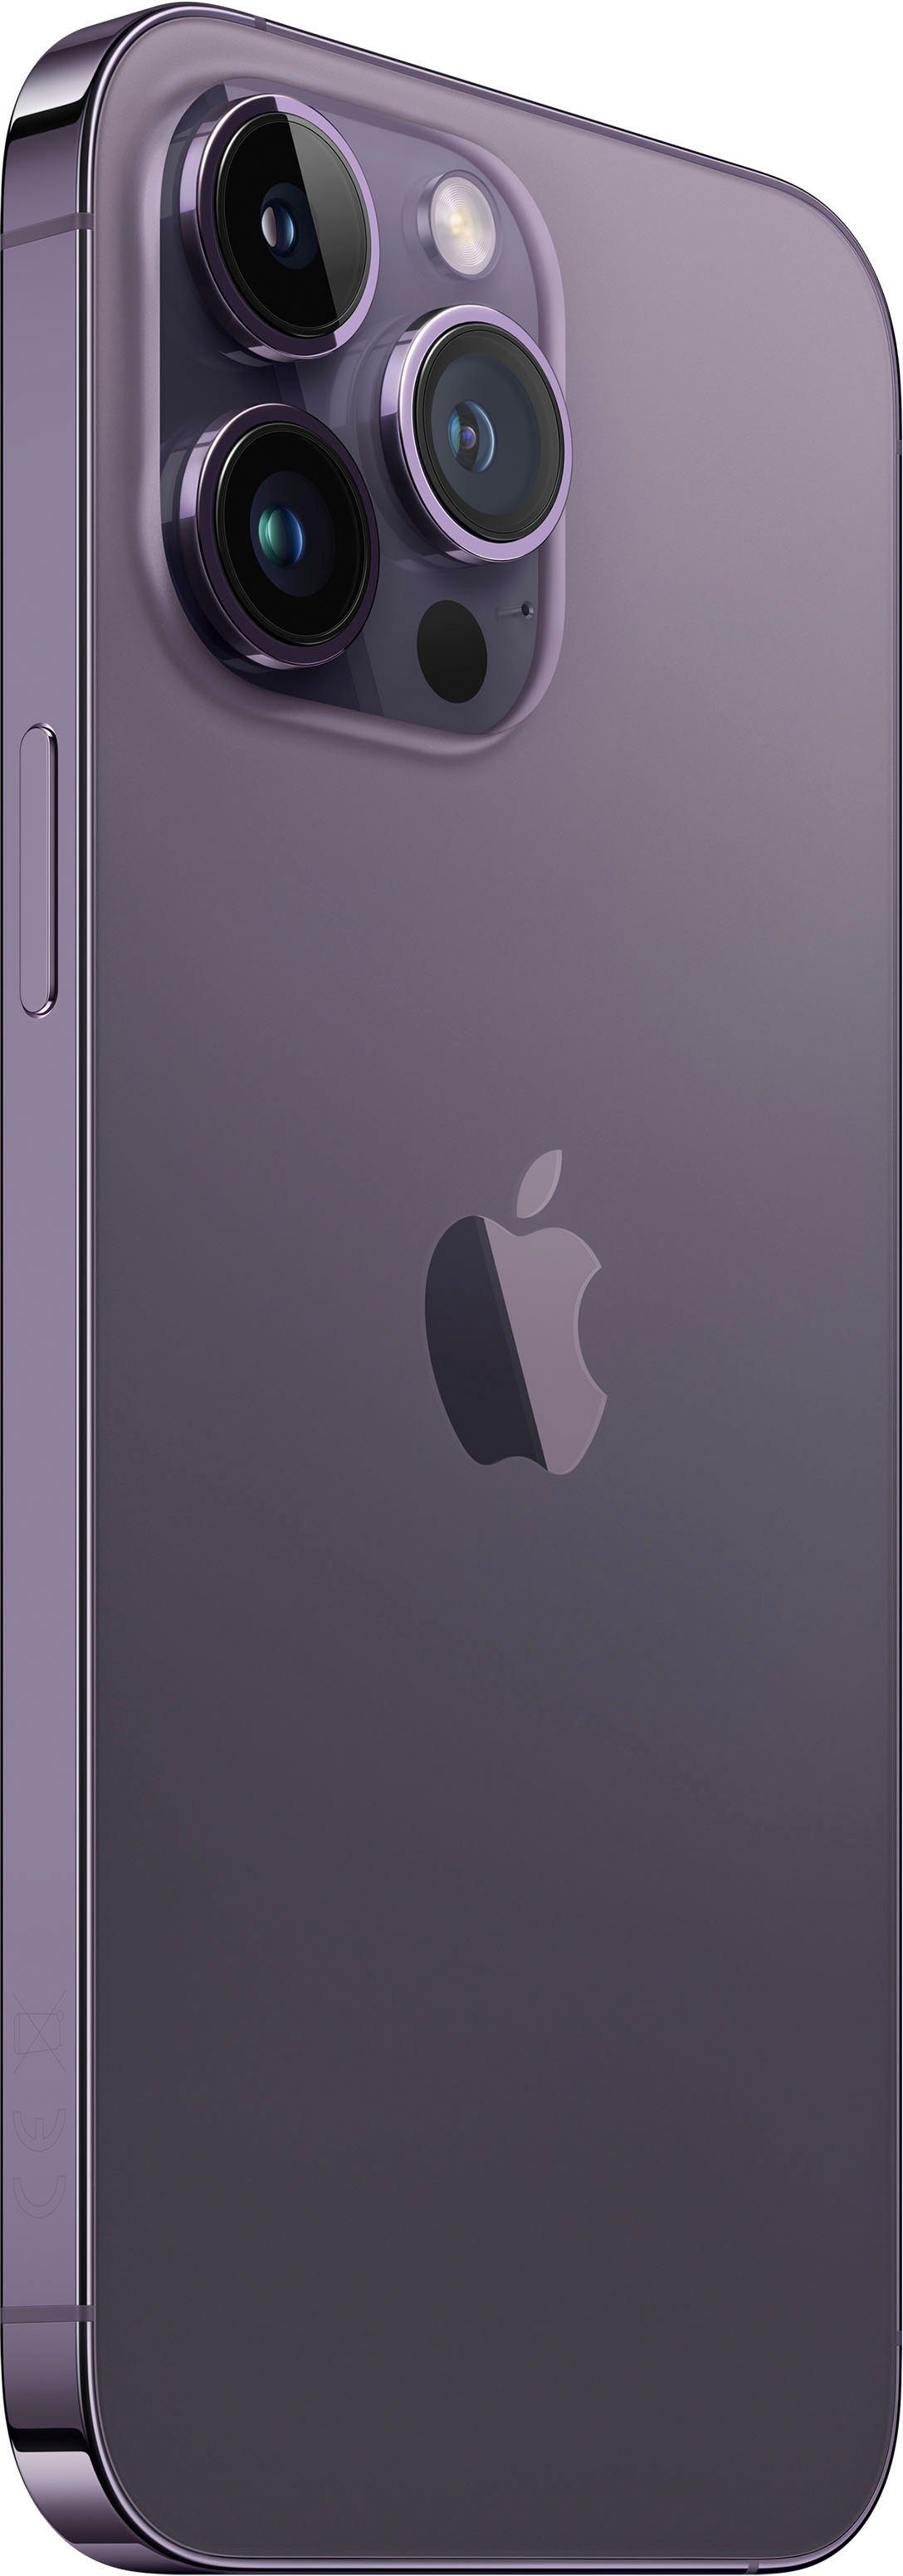 Apple iPhone 14 Pro Max GB deep MP 512 cm/6,7 Smartphone Zoll, Speicherplatz, Kamera) purple 48 512GB (17